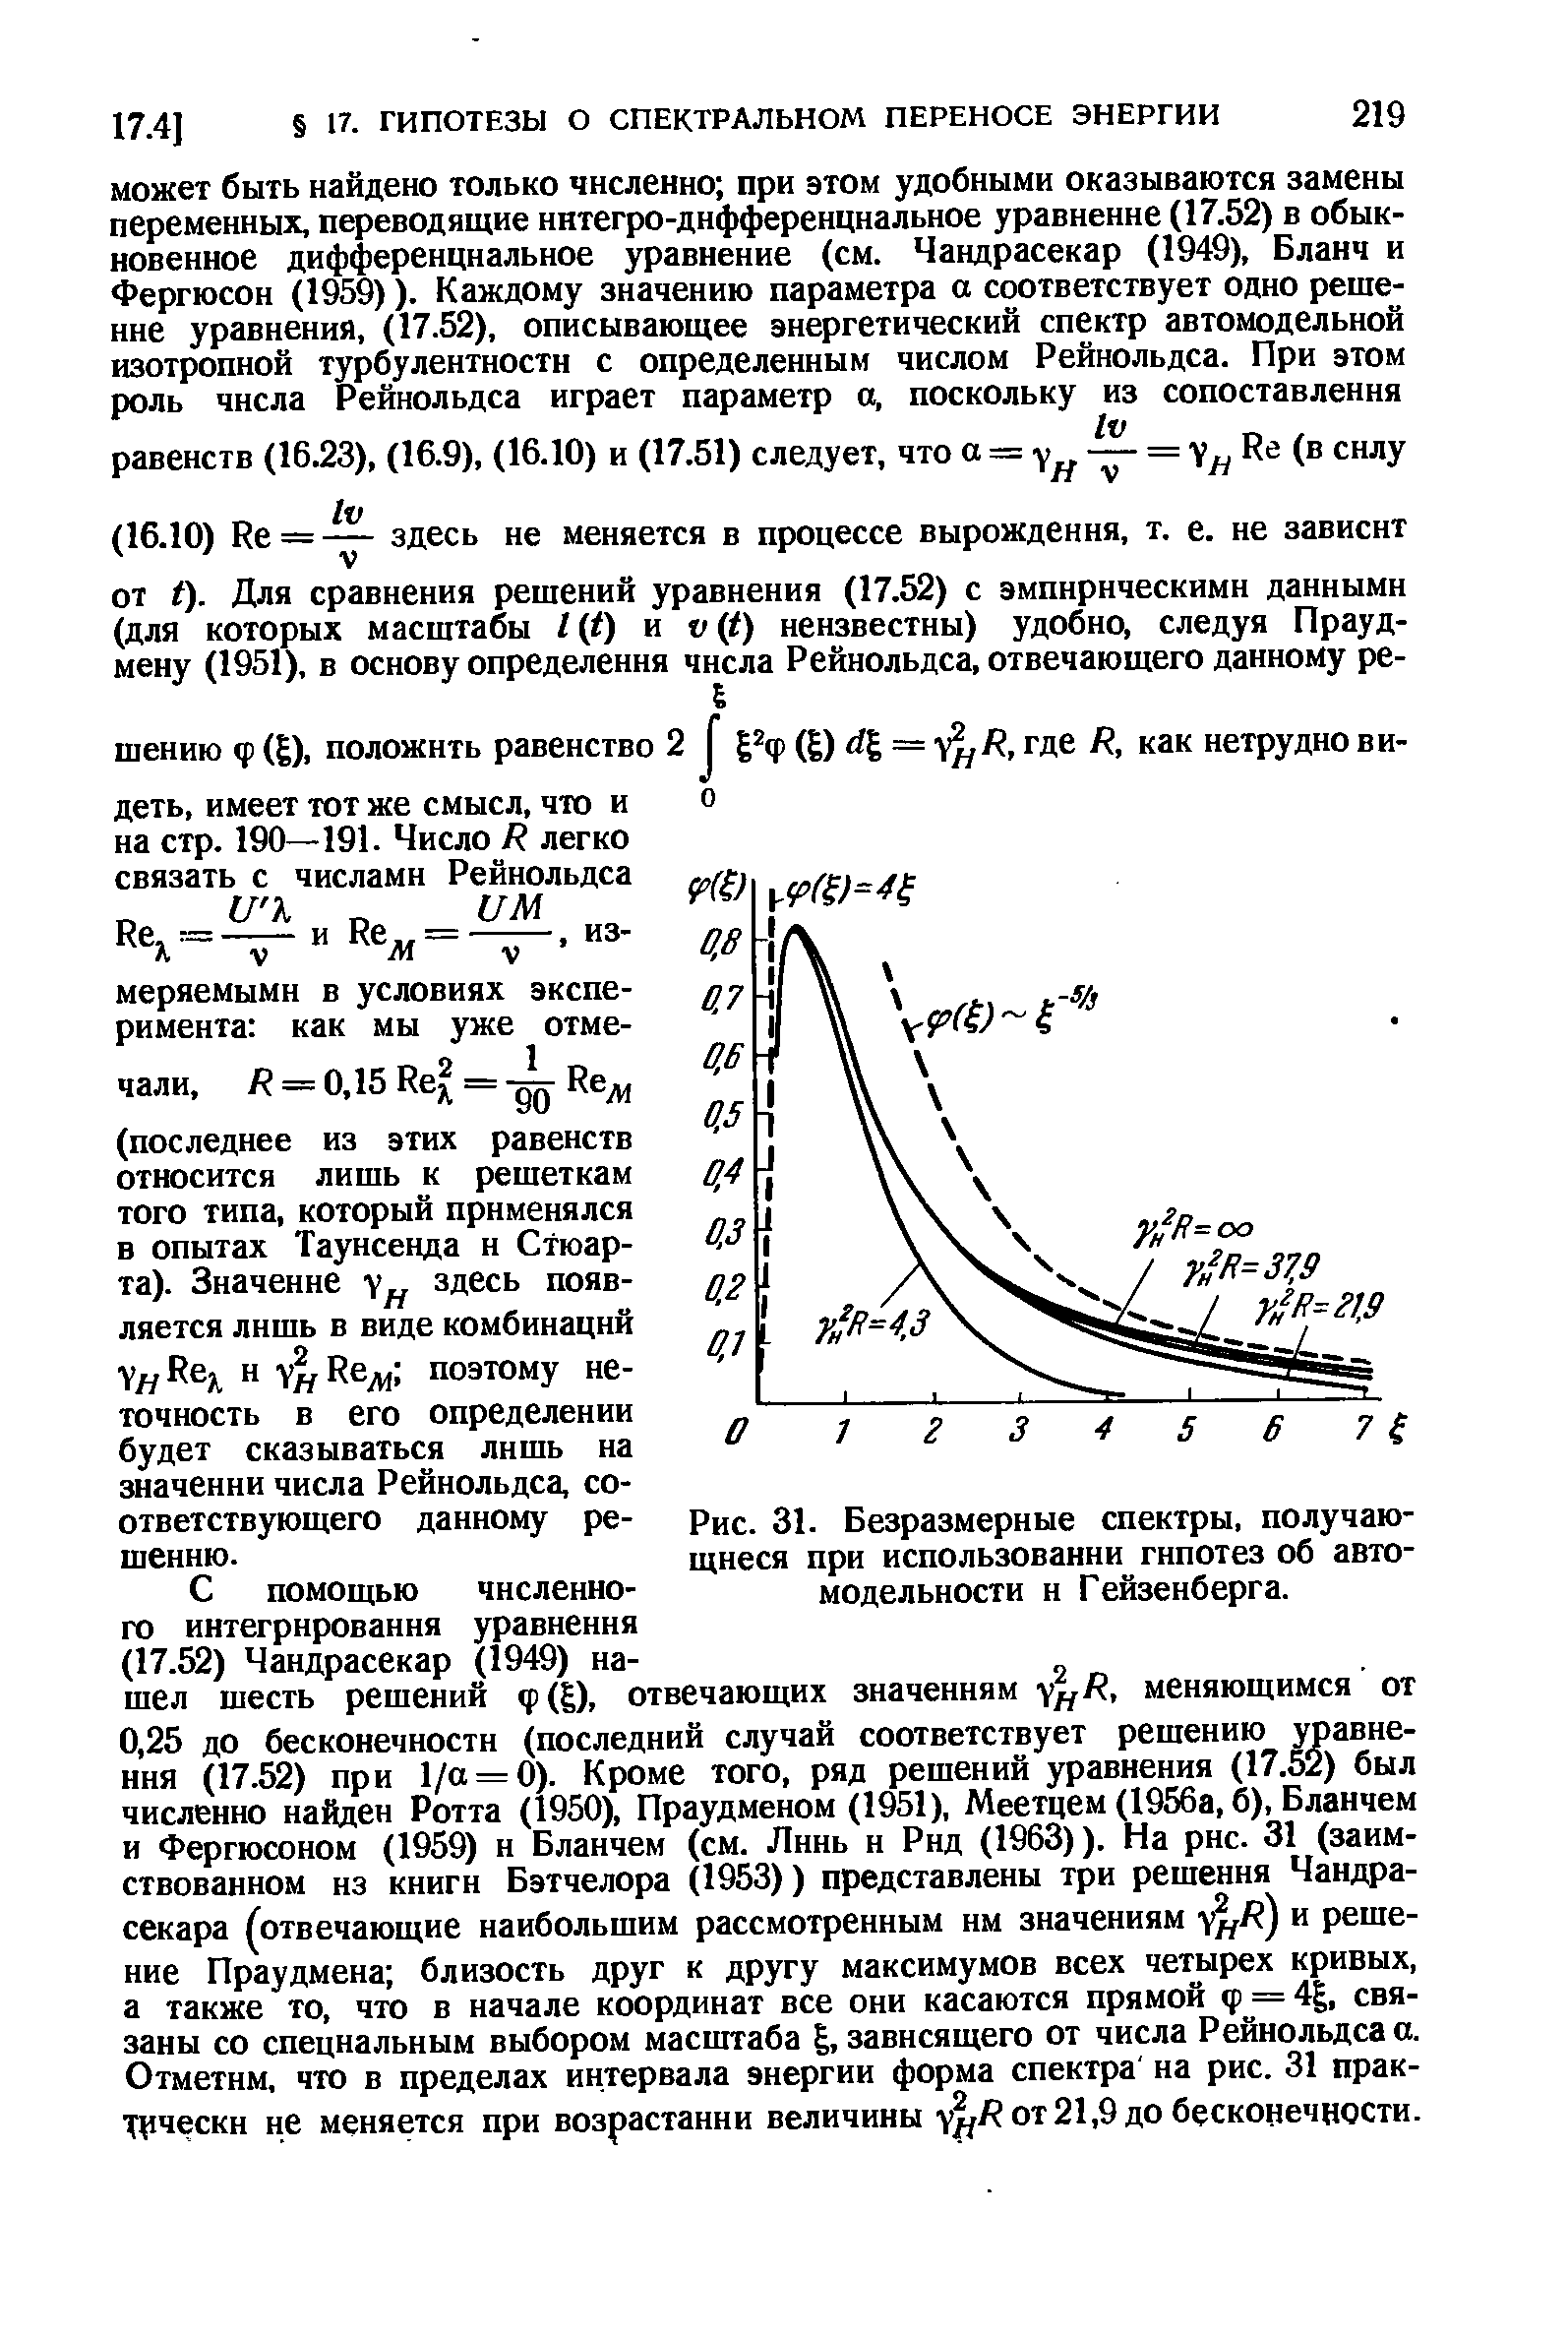 Рис. 31. Безразмерные спектры, получающиеся при использовании гипотез об автомодельности и Гейзенберга.
